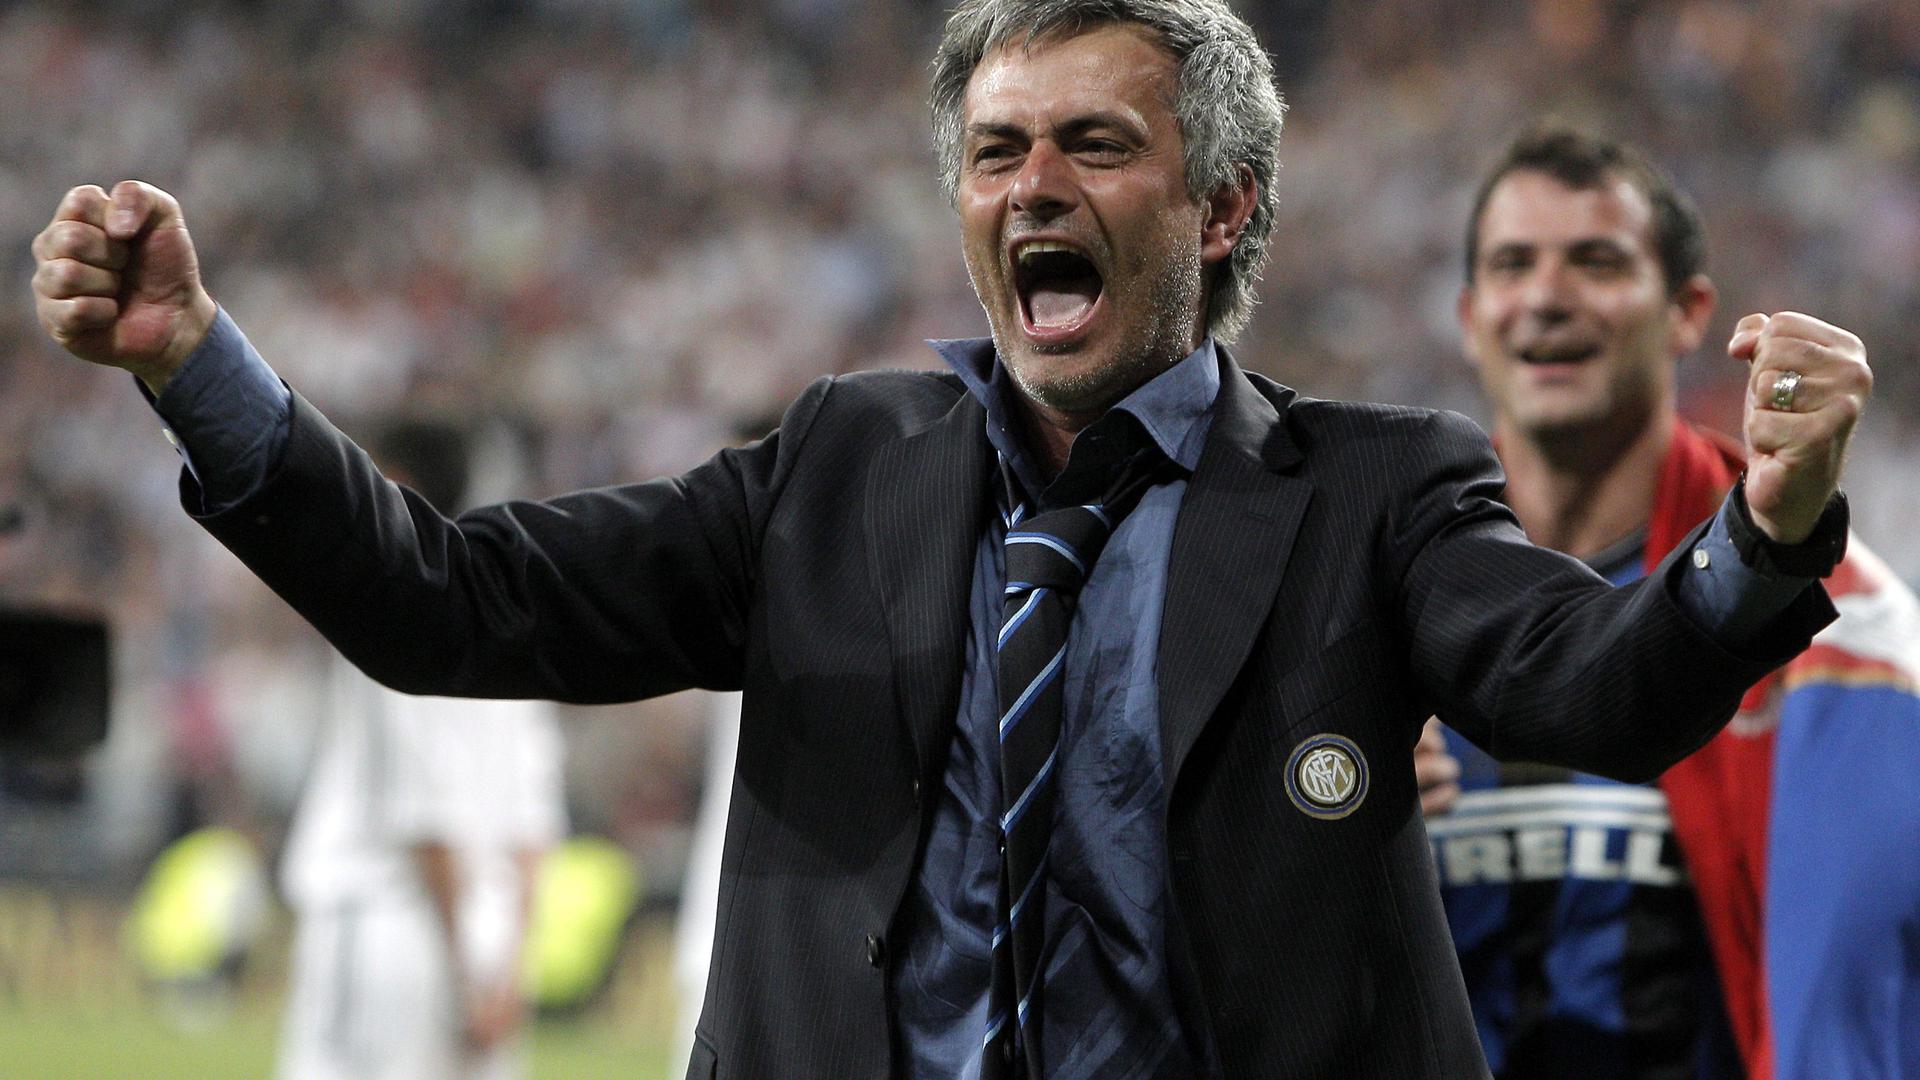 Mourinho festeja a vitória do Inter de Milão frente ao Bayern na final da Liga dos Campeões em maio de 2010.